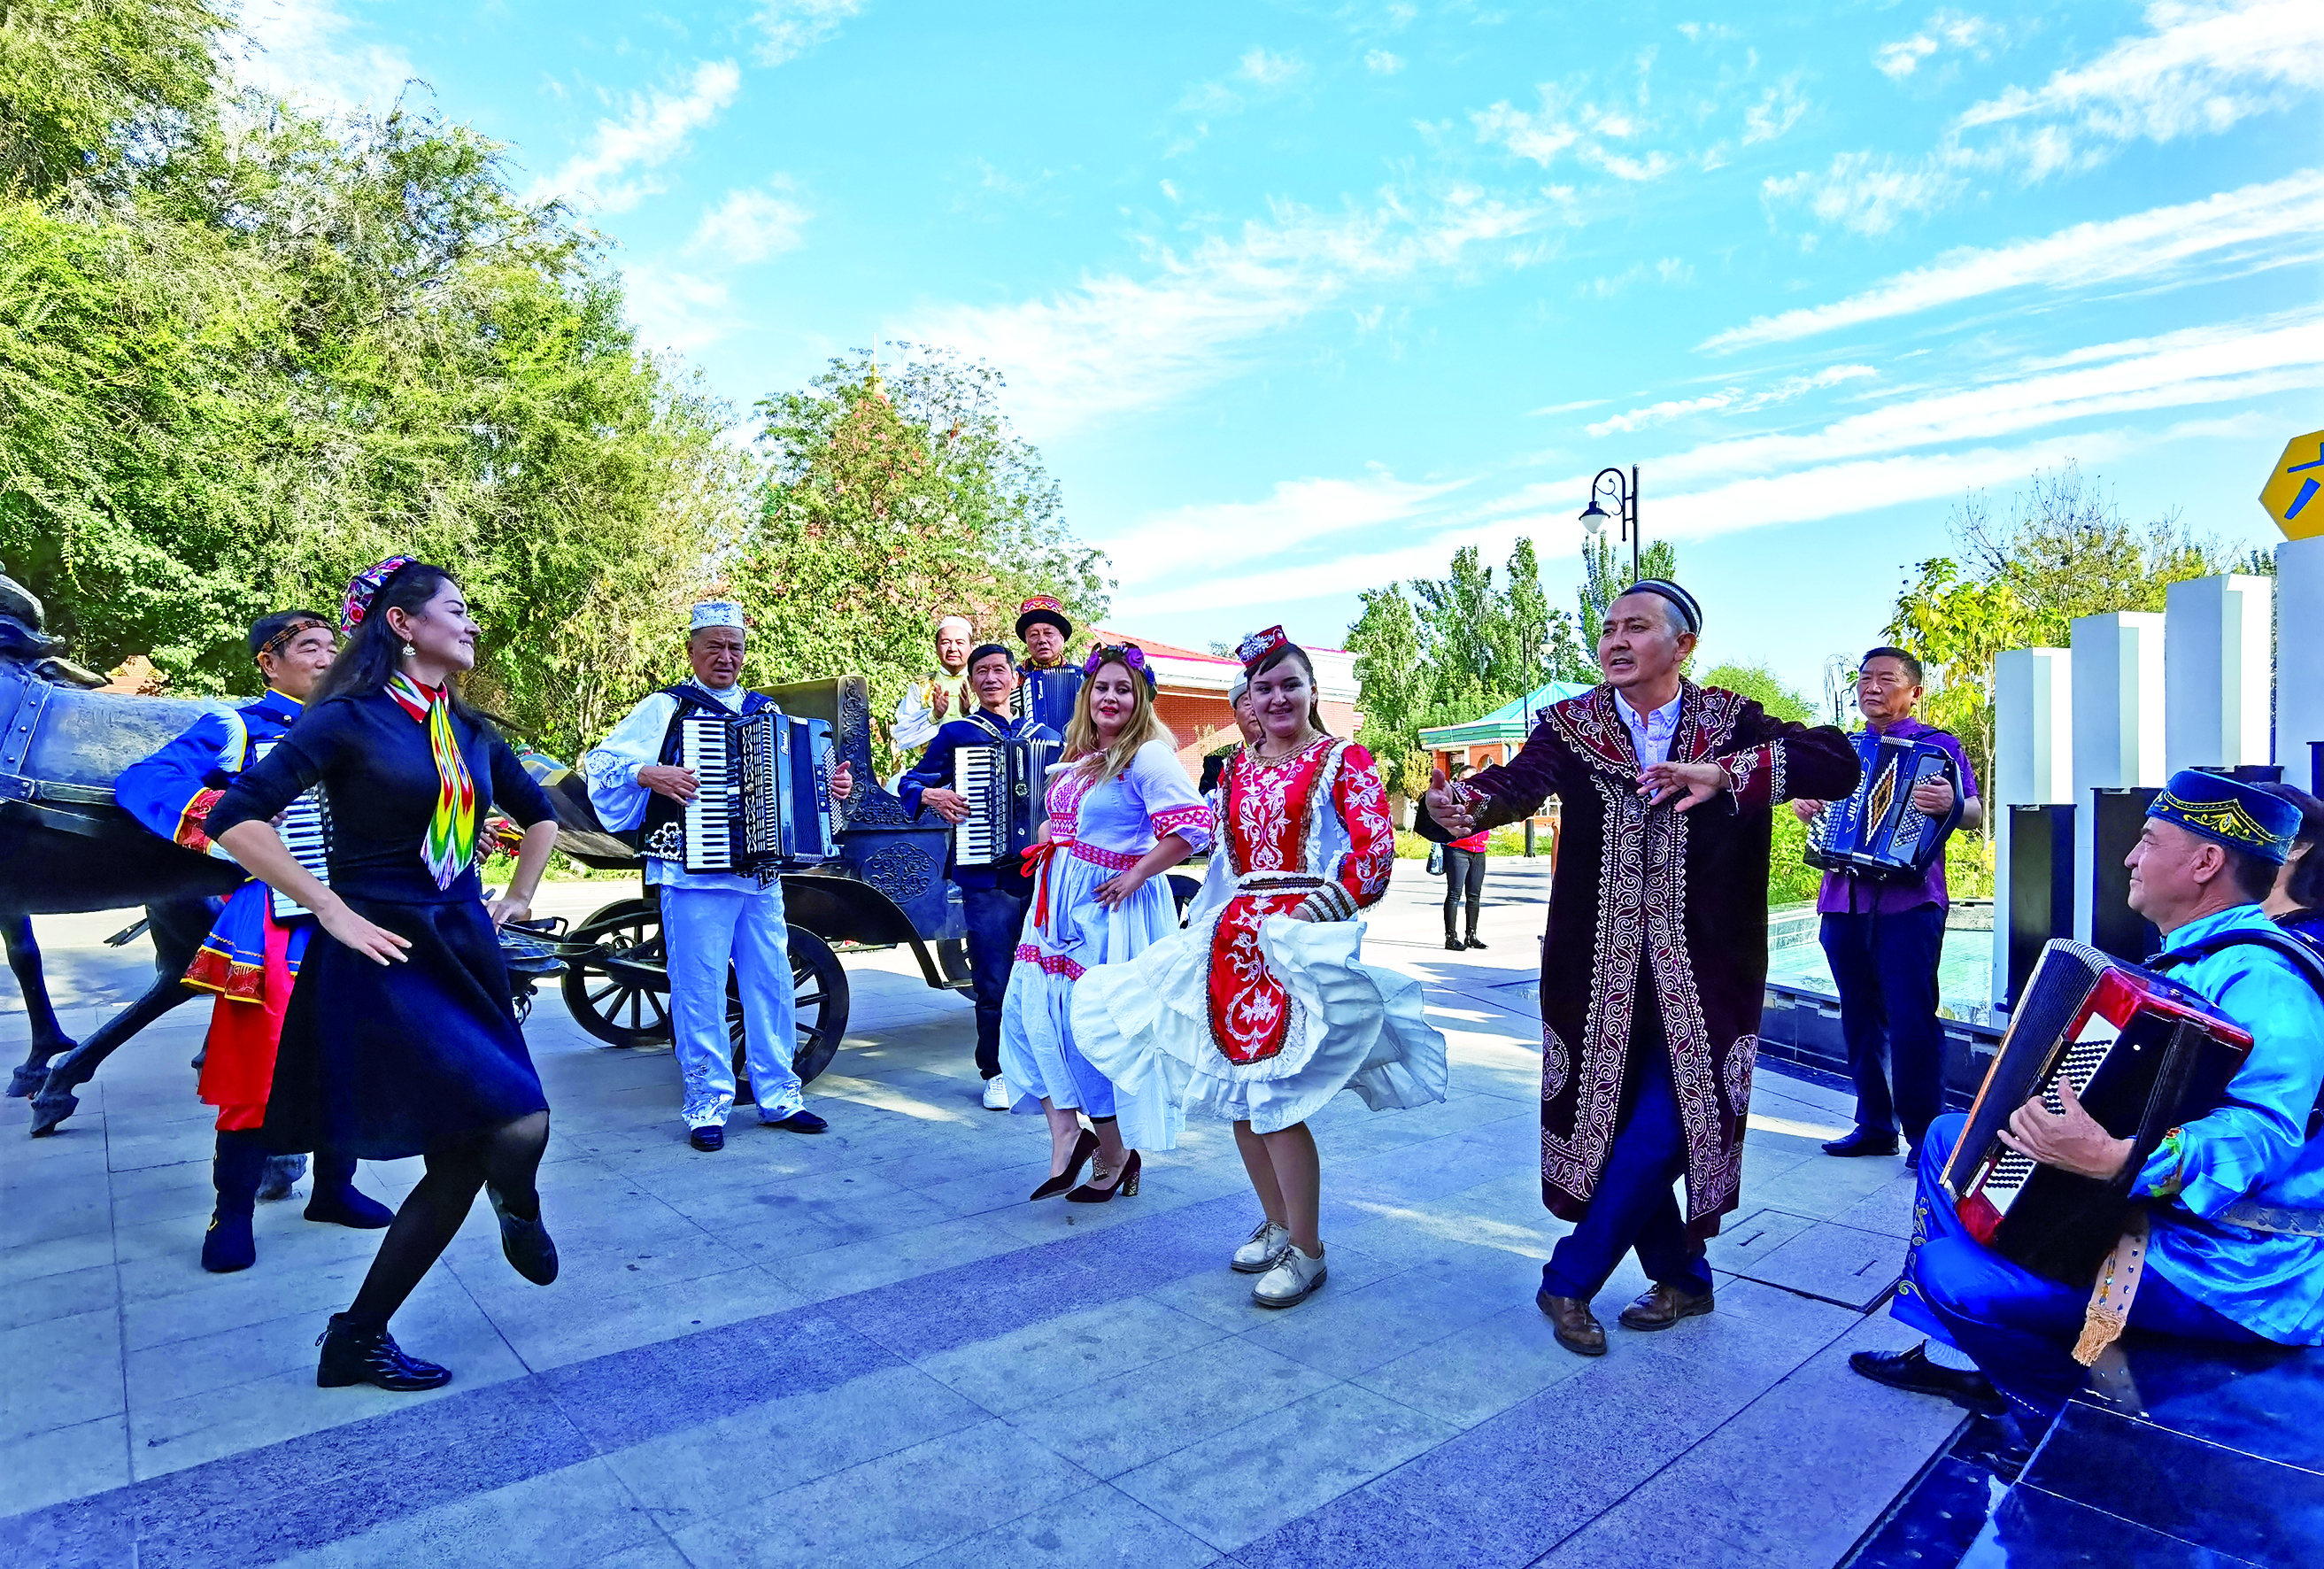 2020年9月 六星街中心广场 各民族以舞蹈交流感情，展现幸福美好的生活 摄影：早克兰.jpg